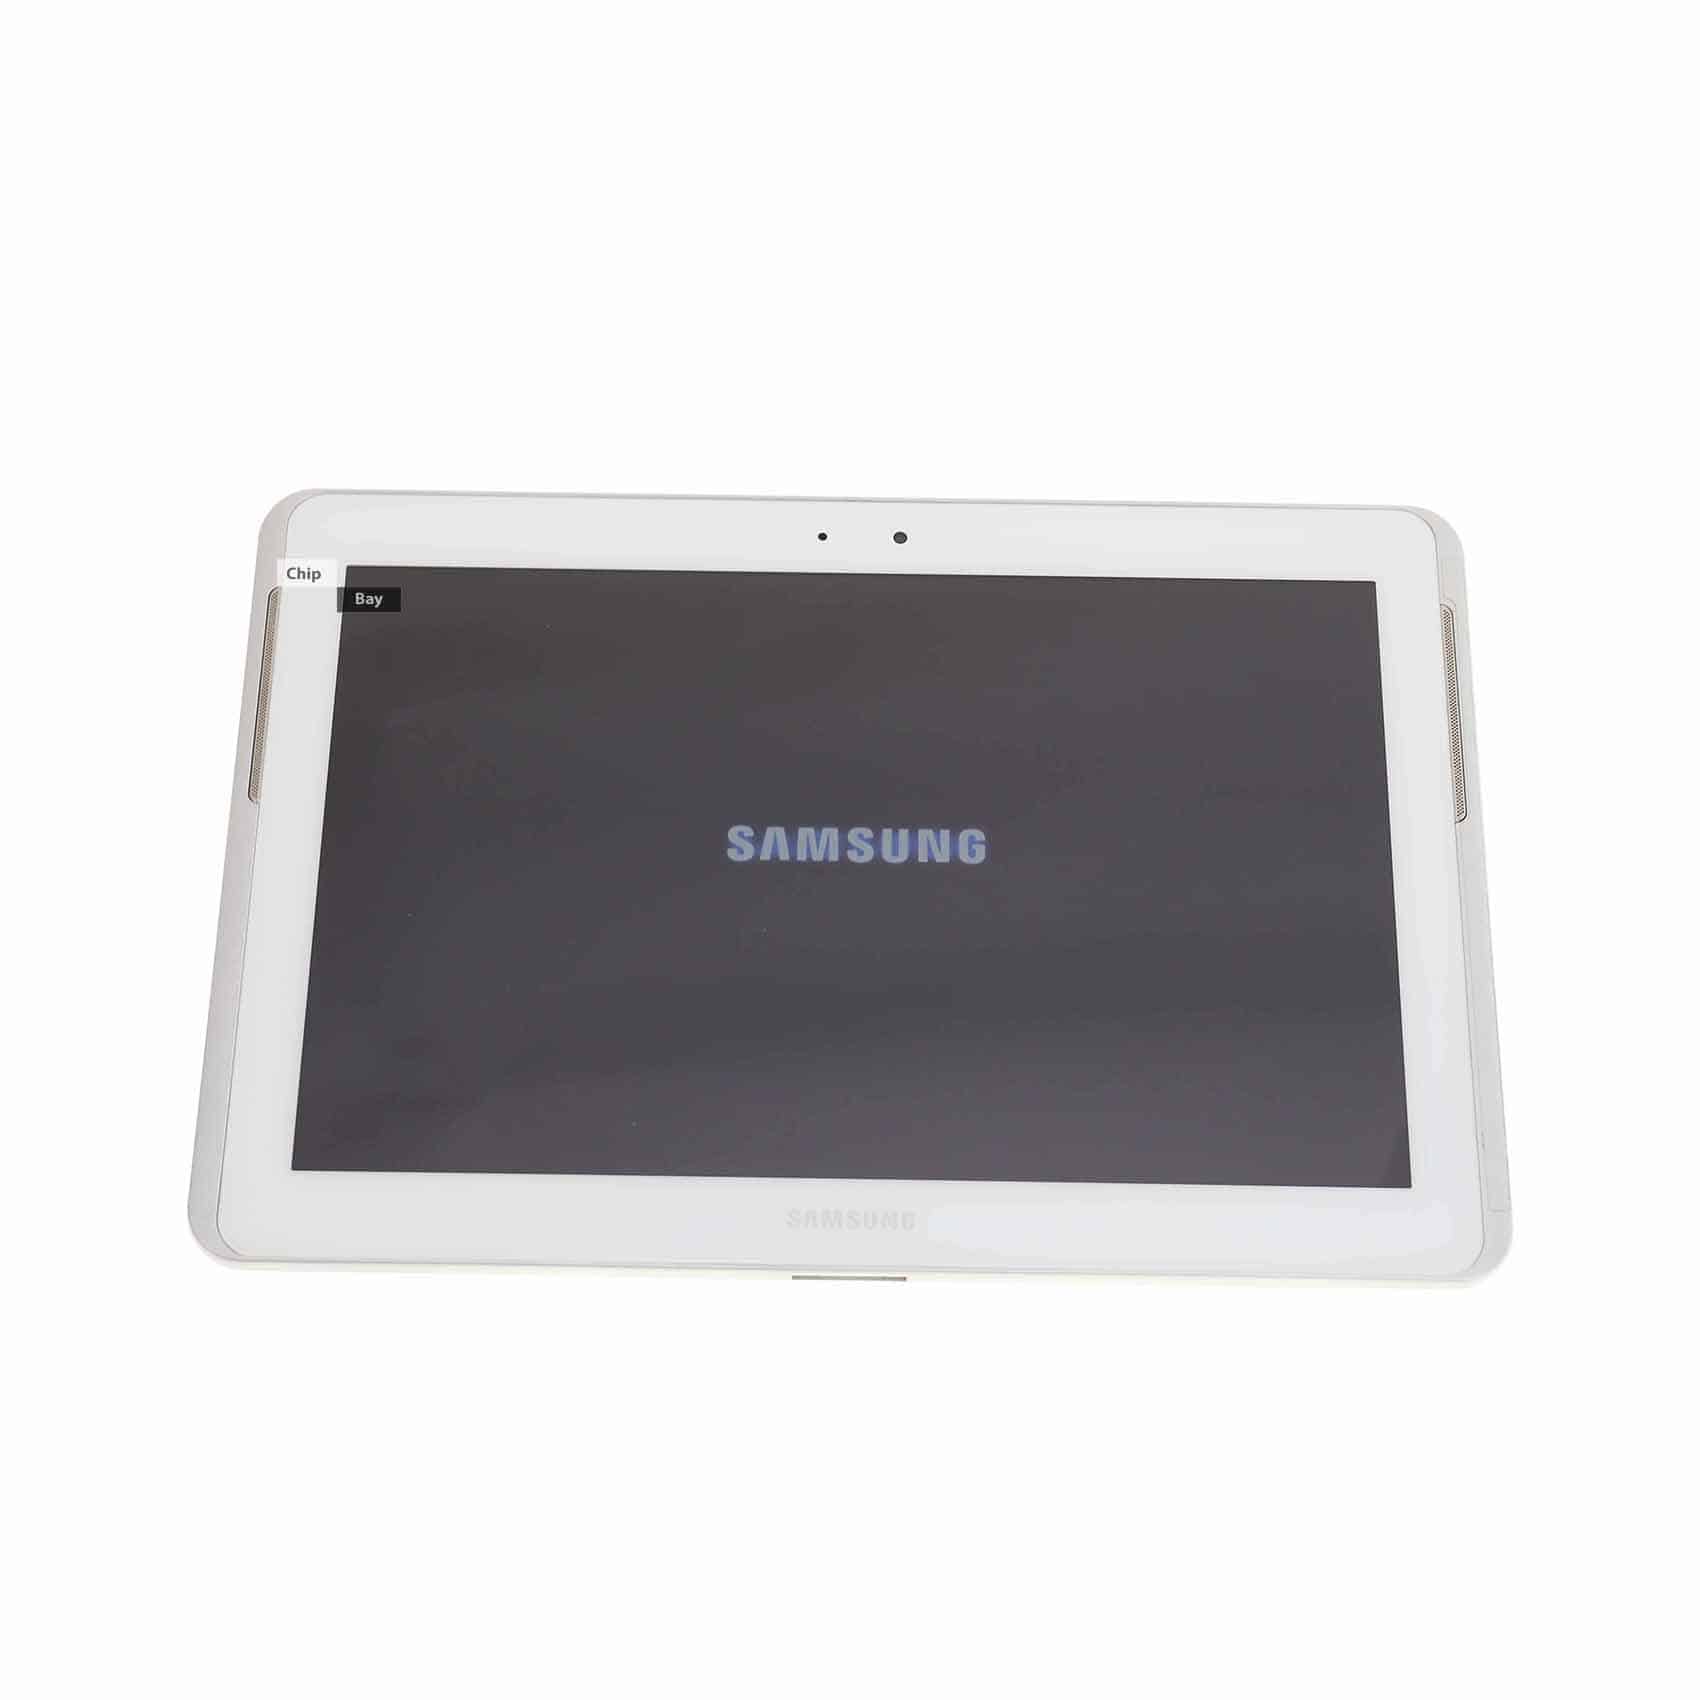 Планшет Samsung Galaxy Tab 2 101 P5110 - подробные характеристики обзоры видео фото Цены в интернет-магазинах где можно купить планшет Samsung Galaxy Tab 2 101 P5110